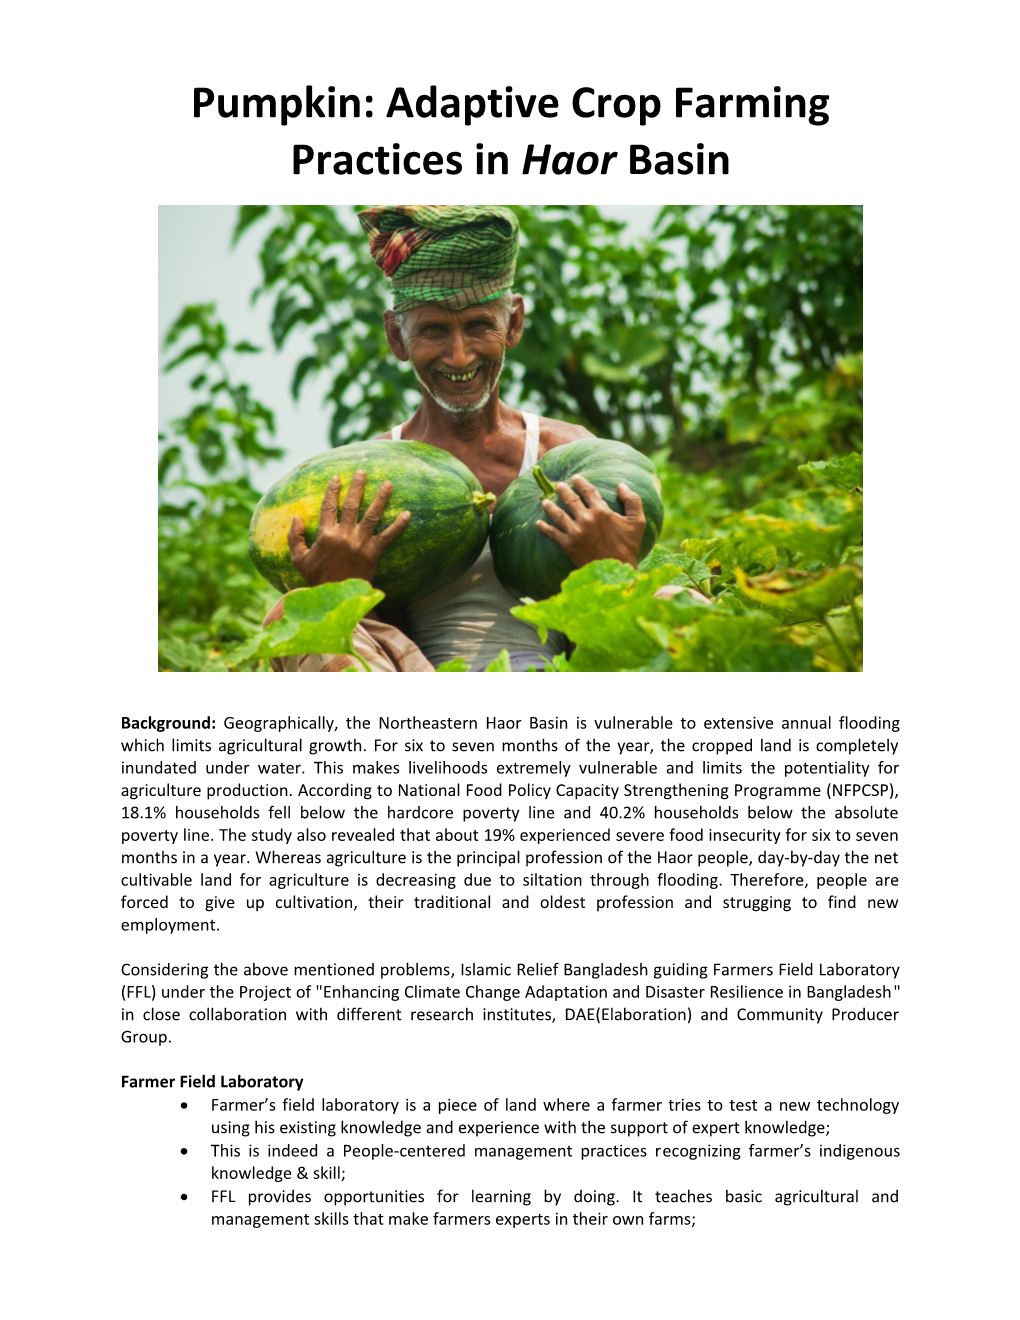 Pumpkin: Adaptive Crop Farming Practices in Haor Basin